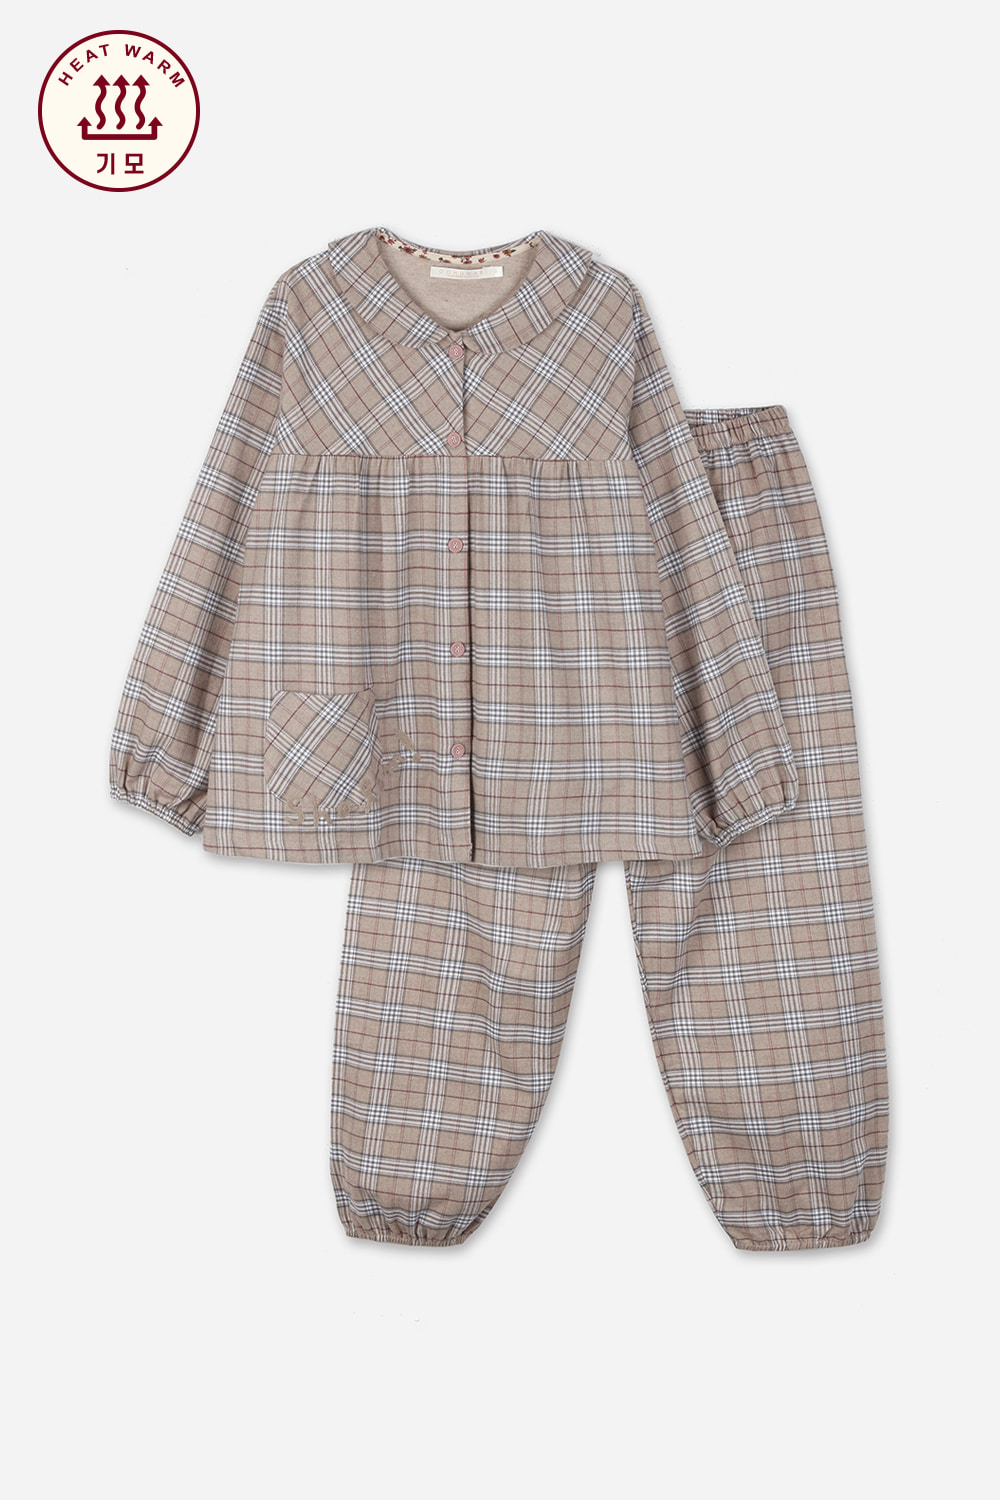 샬롬 여세트3잠옷, 홈웨어, 아동내복, 아동속옷,성인잠옷,고후나비